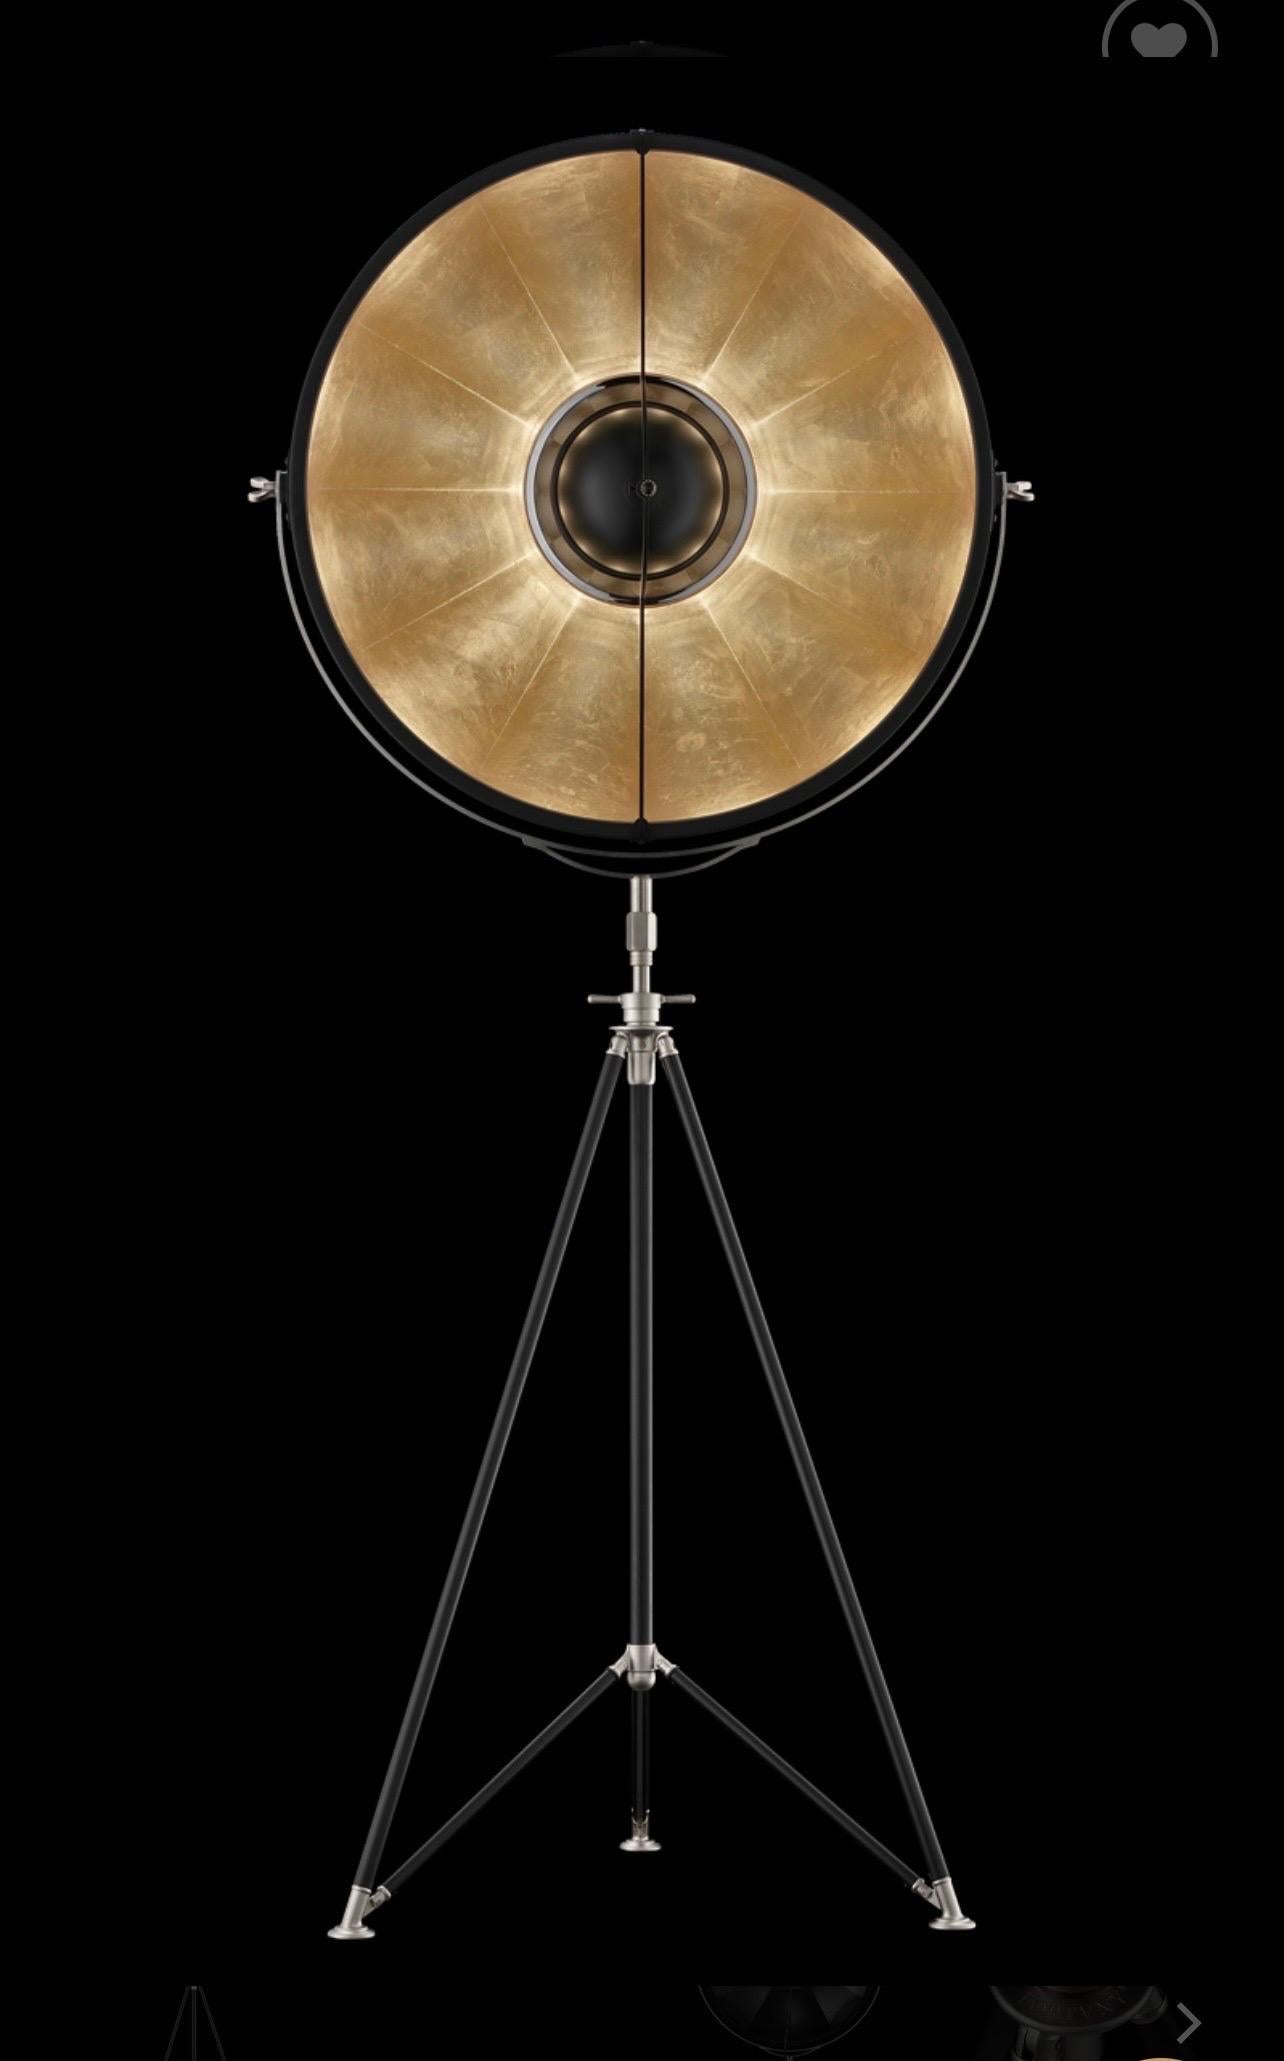 Mariano Fortuny liebte es, mit Licht zu experimentieren, und war zu seiner Zeit ein berühmter Erfinder und Bühnenbeleuchtungstechniker. Seine Entwicklungen werden auch heute noch in renommierten Theatern auf der ganzen Welt eingesetzt.

Fortuny®